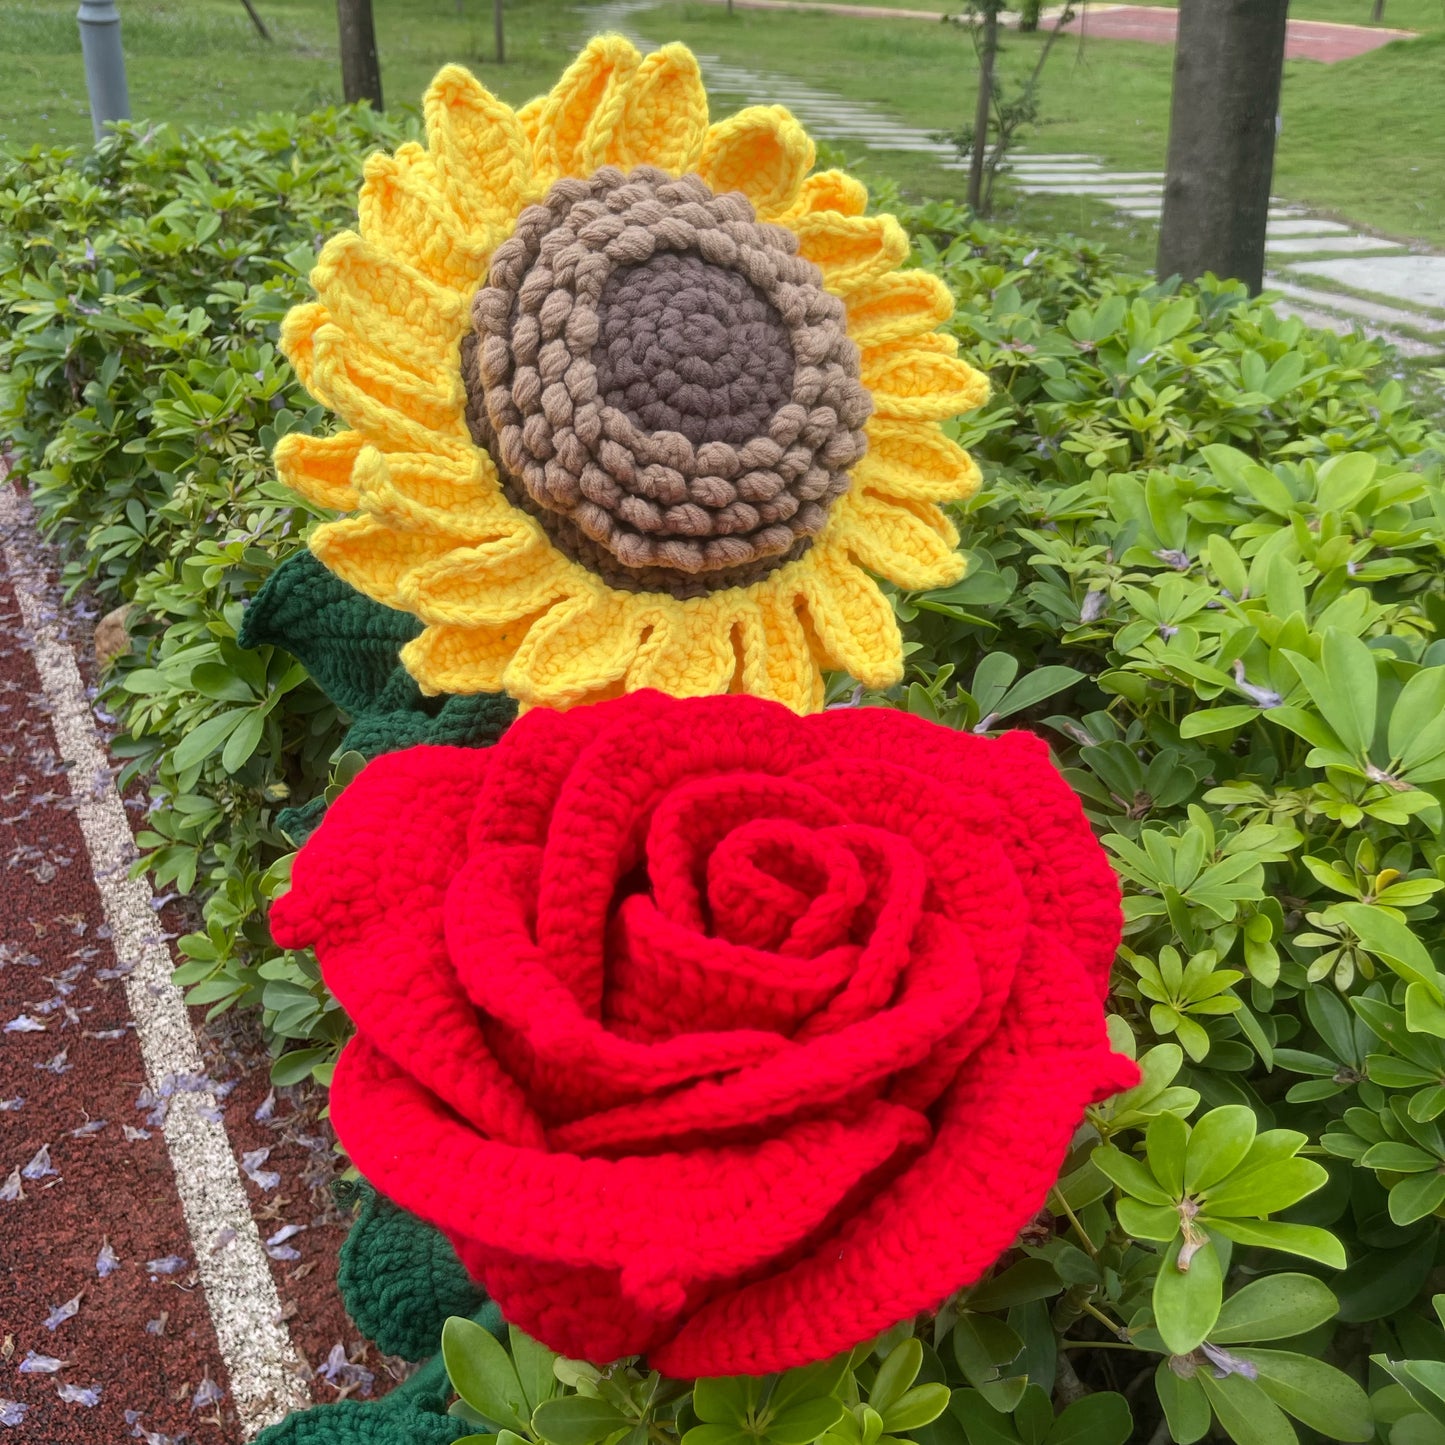 Décor de piquet de fleur géant au Crochet fait à la main, accessoires de tournesol et de Rose rouge pour la célébration de la remise des diplômes